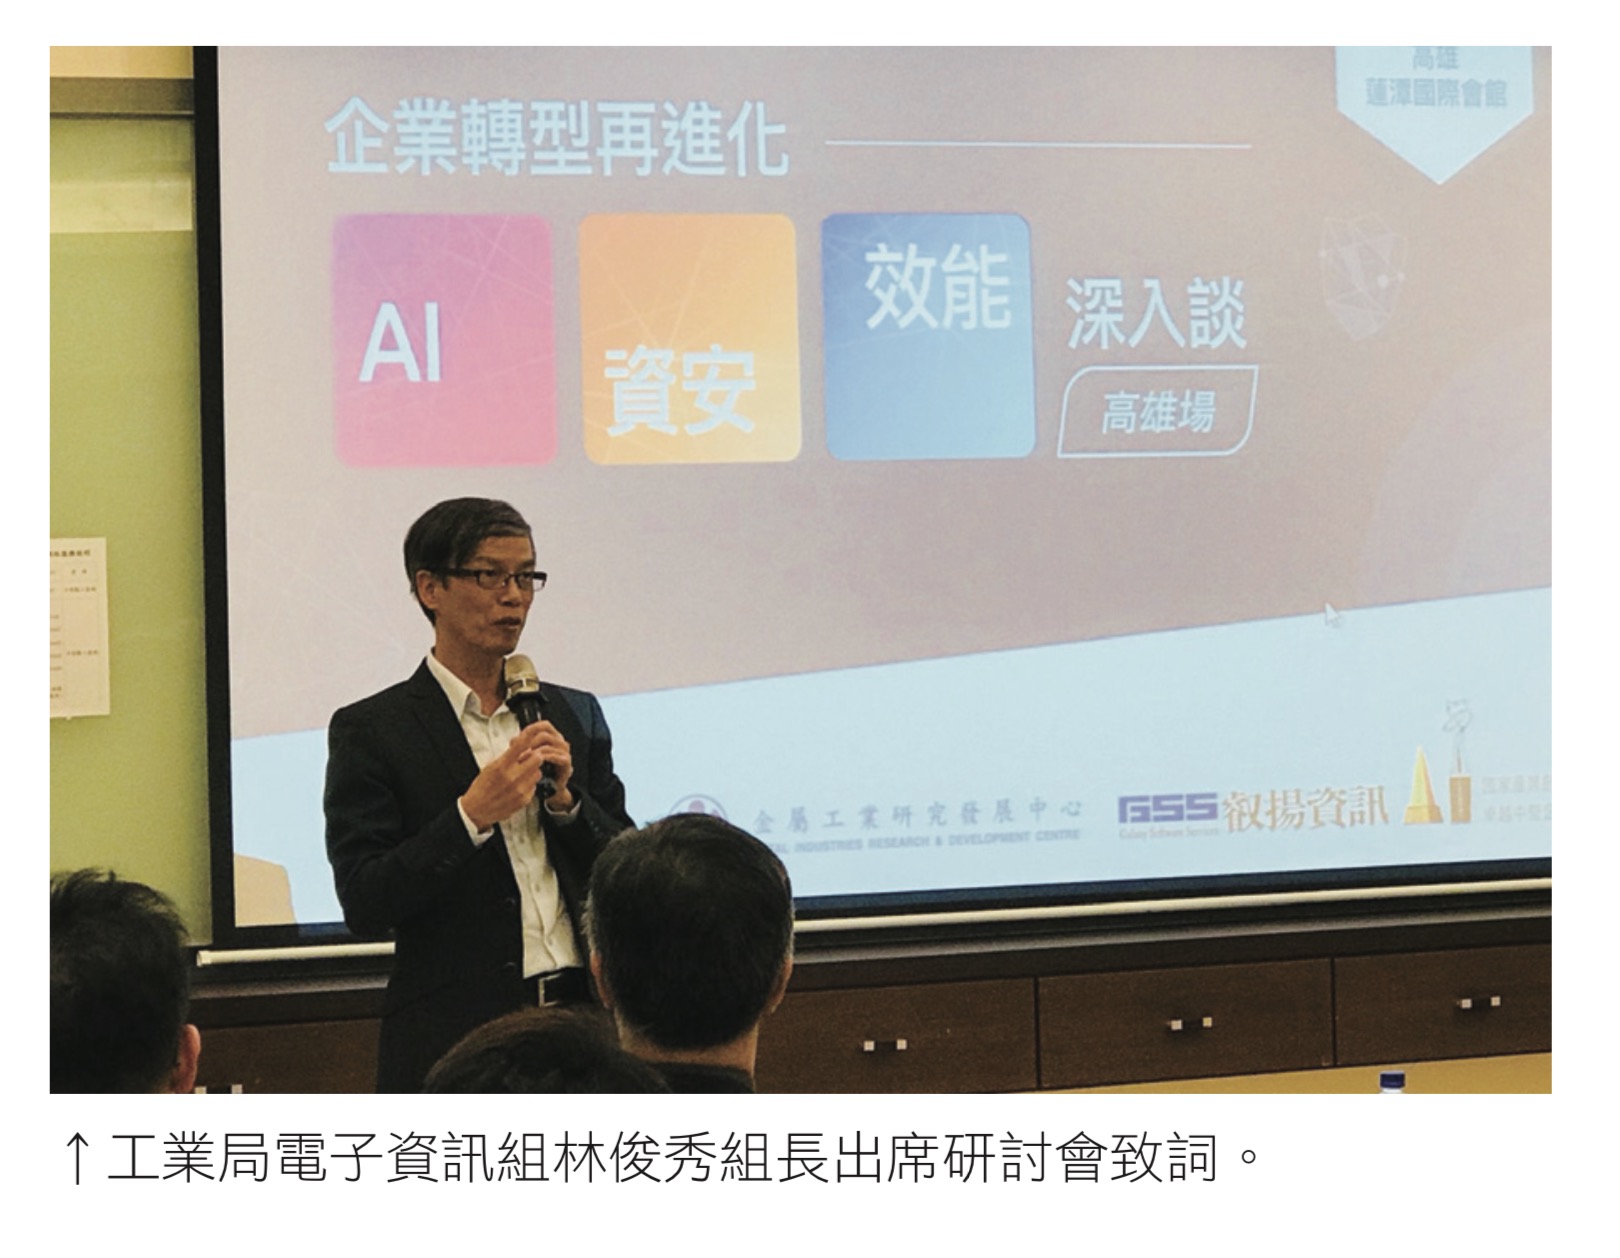 工業局電子資訊組林俊秀組長出席研討會致詞。